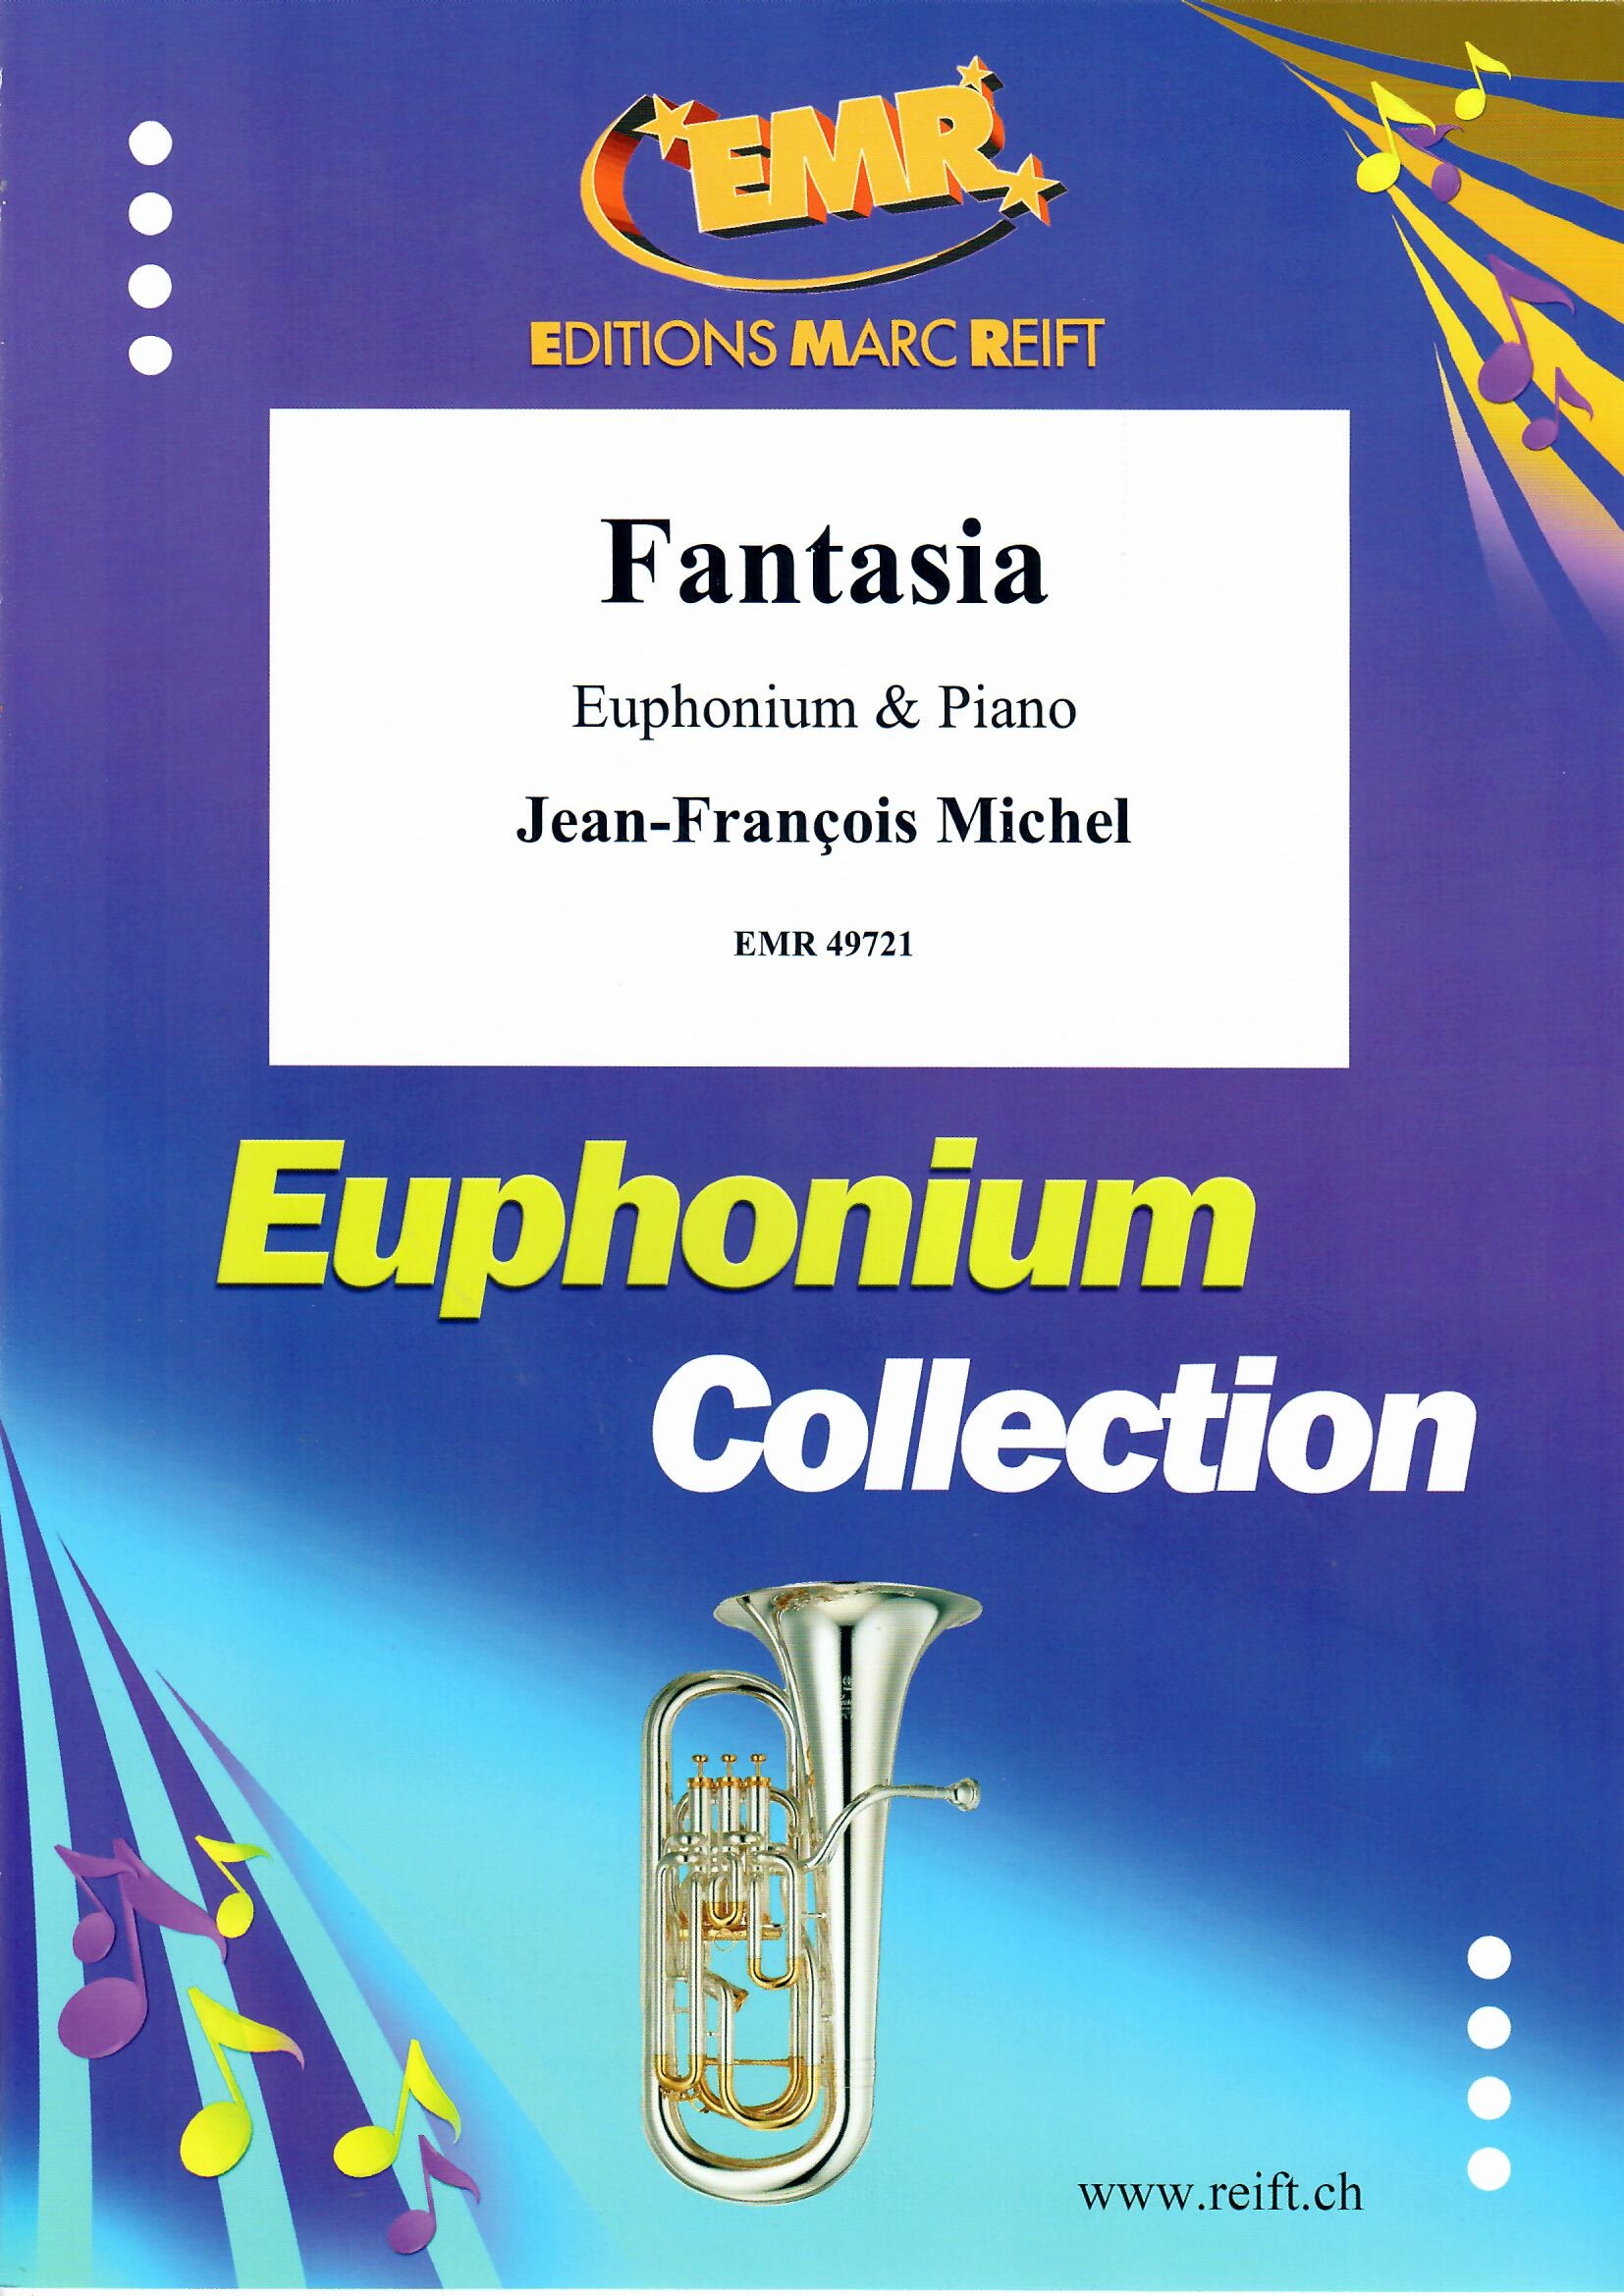 FANTASIA - Euphonium & Piano, SOLOS - Euphonium